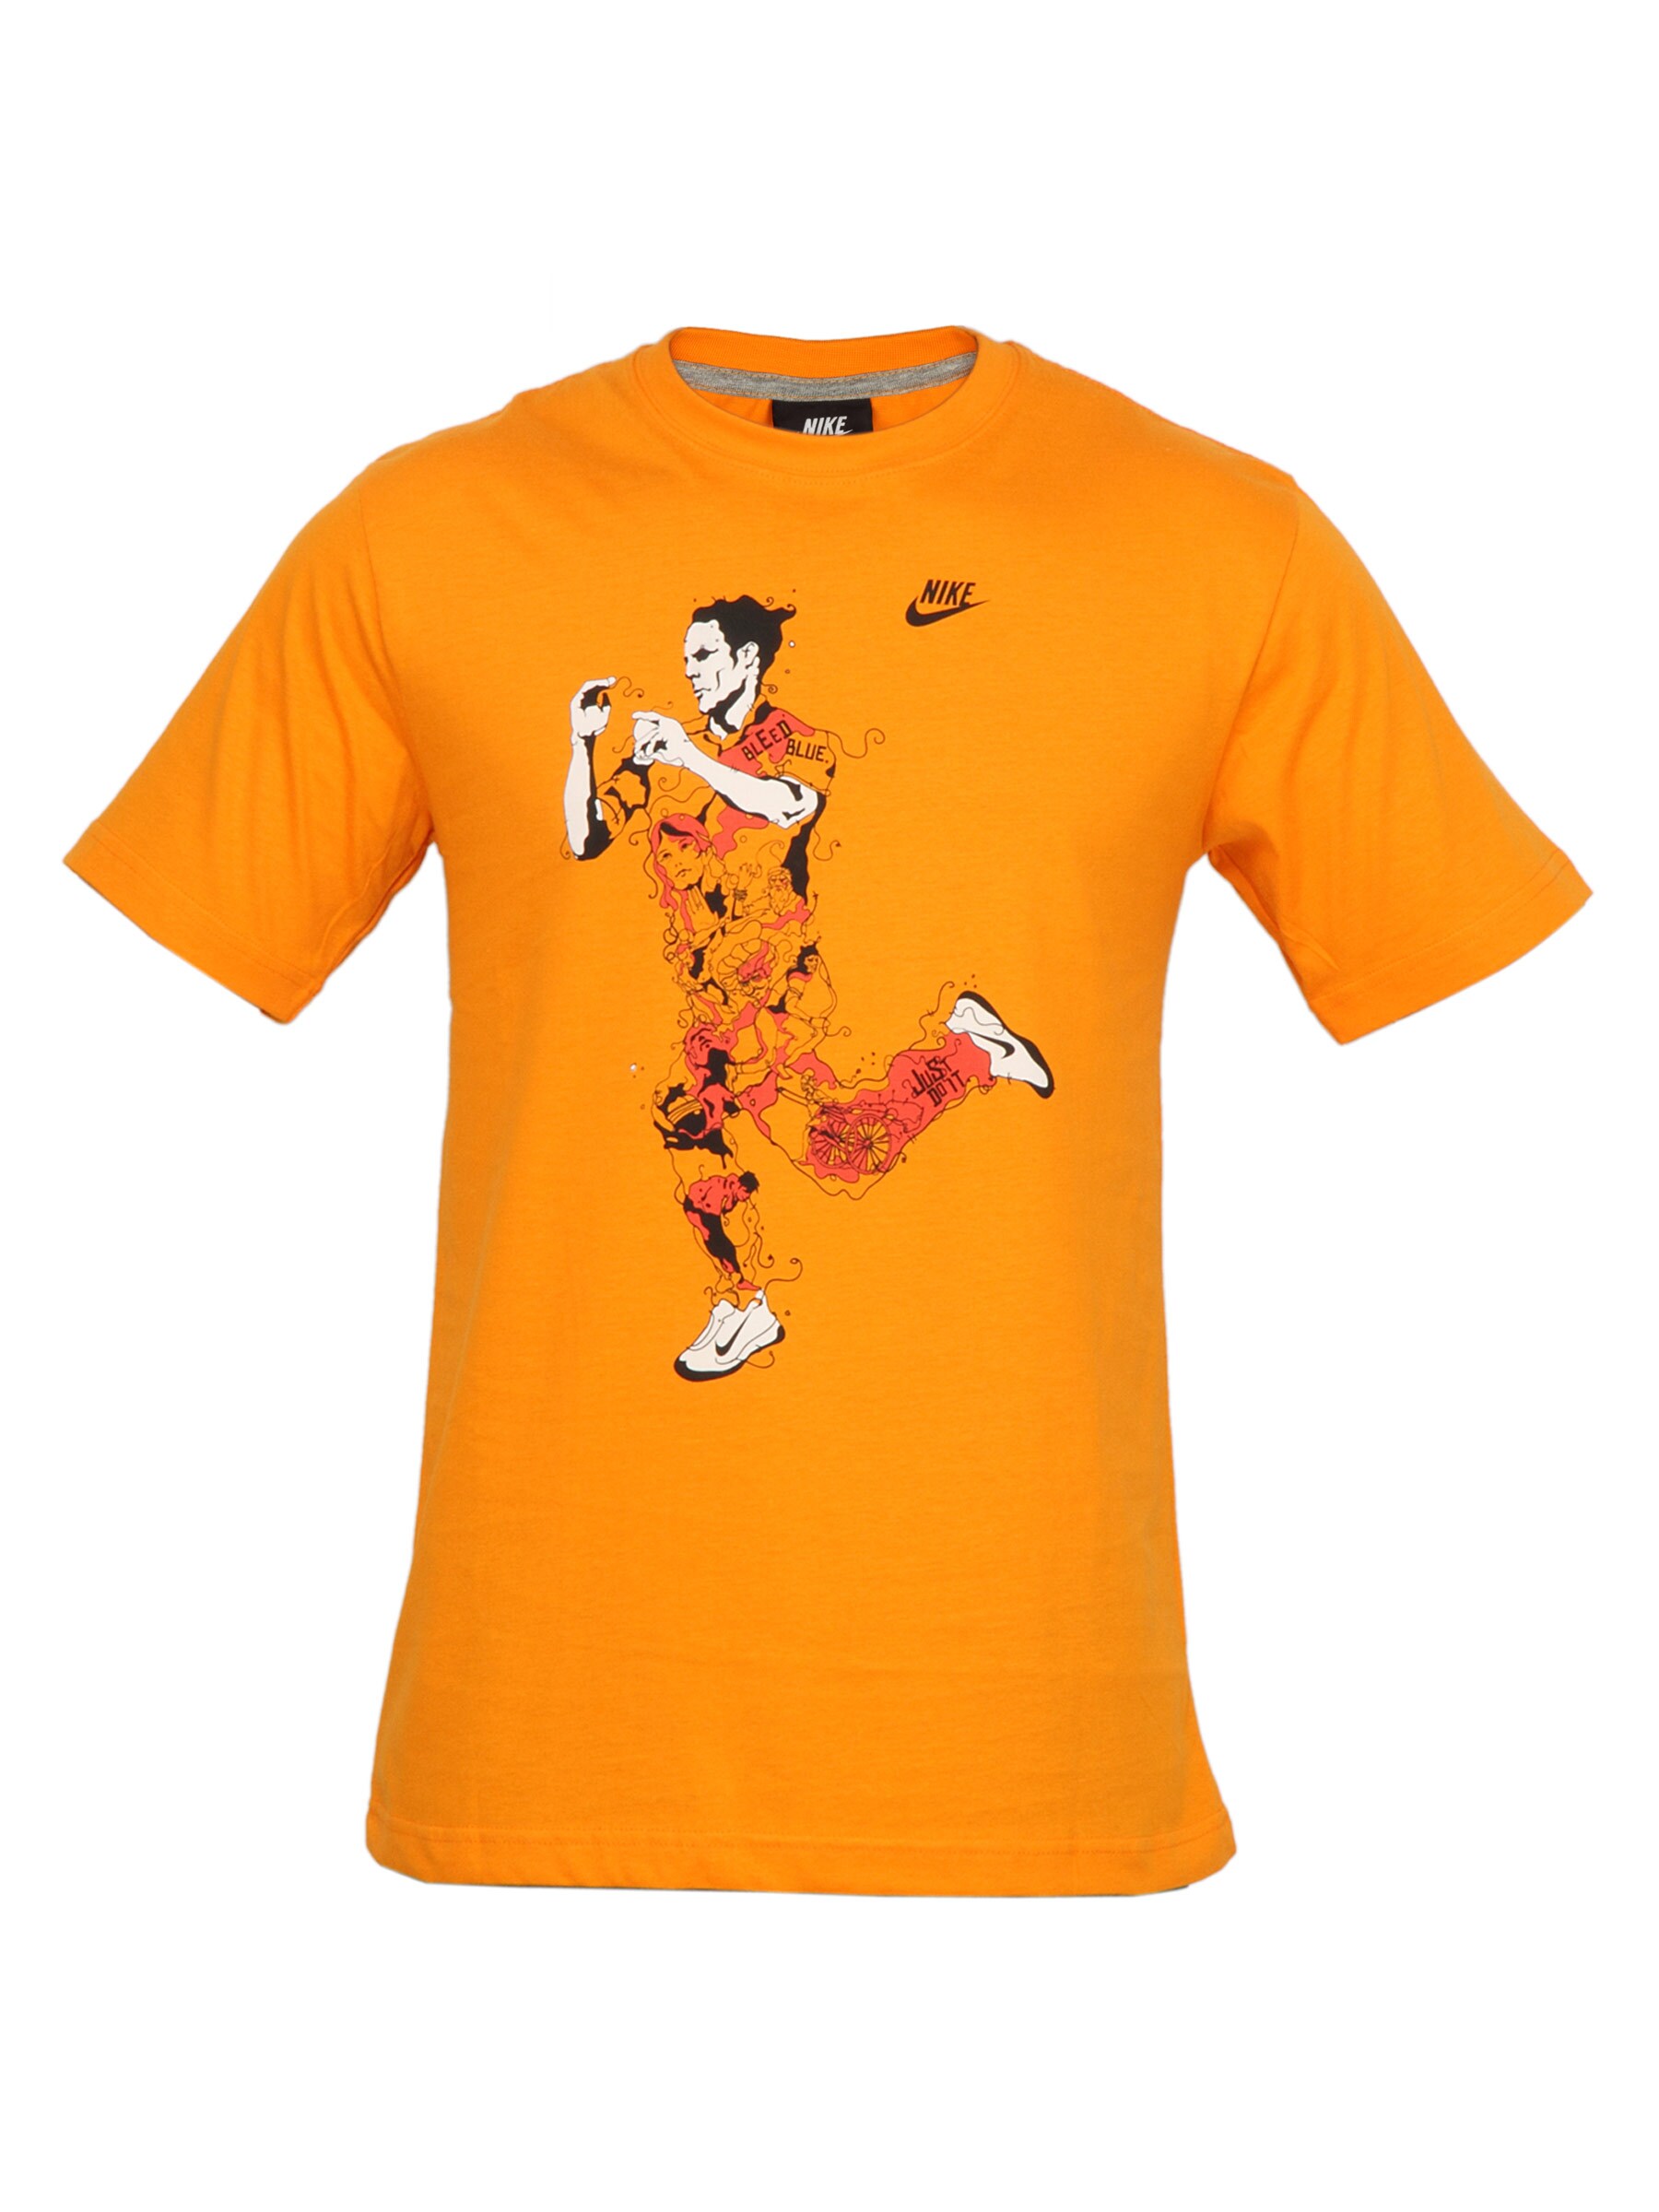 Nike Men Printed Orange T-shirt